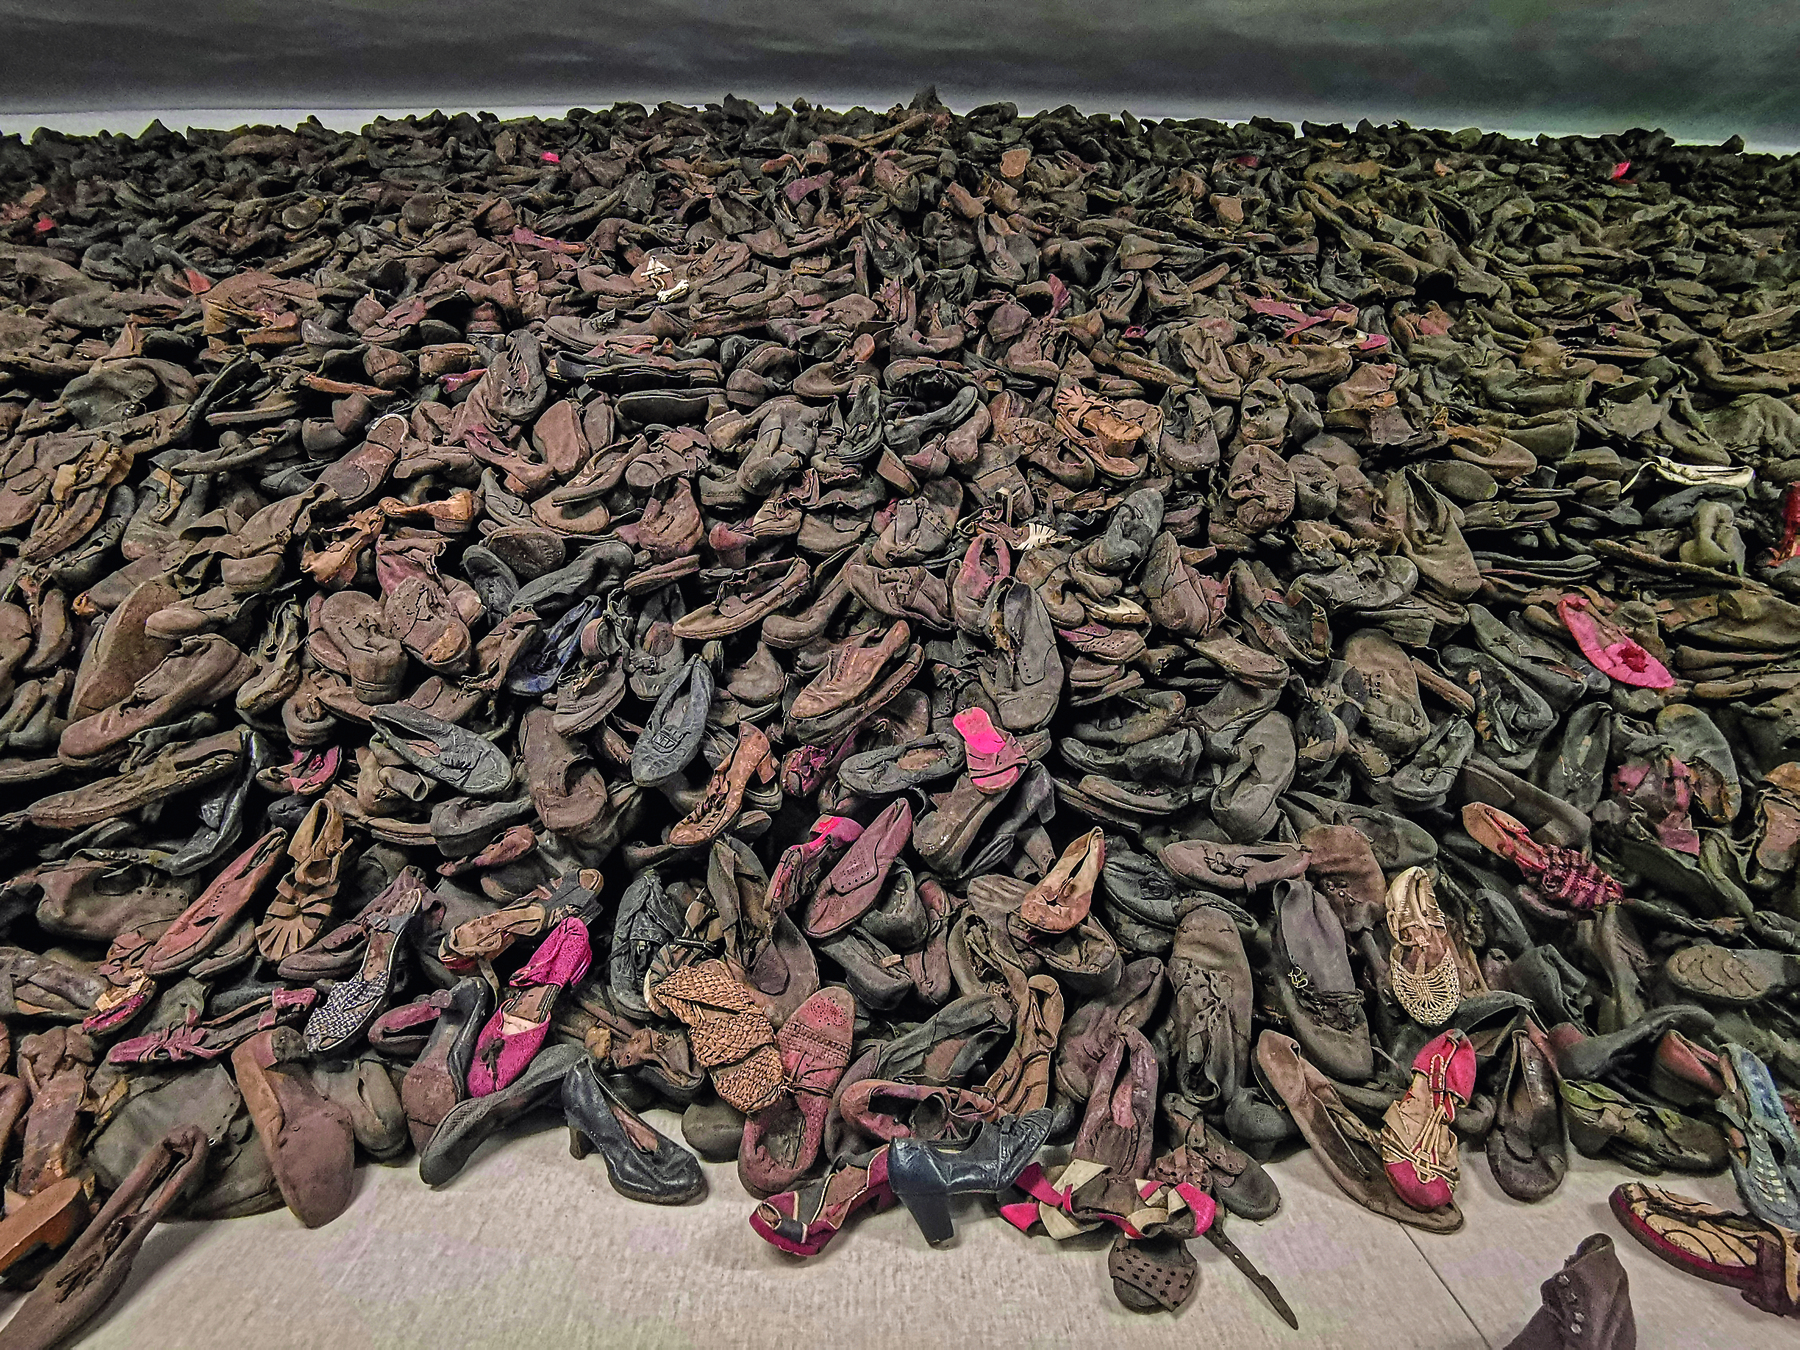 Fotografia. Uma imensa pilha de sapatos desgastados amontoados.